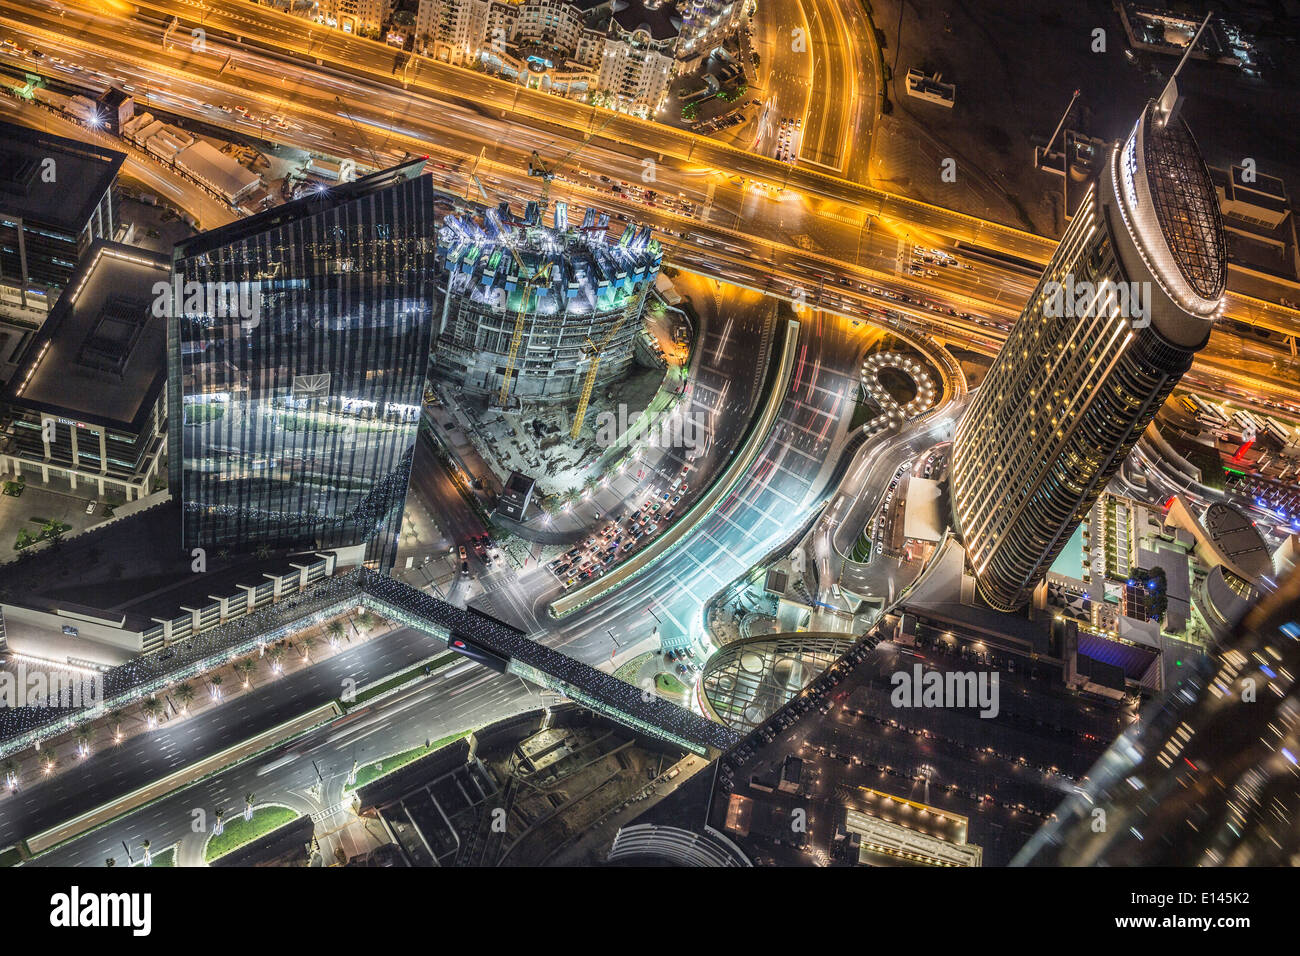 Emirats Arabes Unis, Dubaï, l'adresse de l'hôtel. Vue depuis le Burj Khalifa, le plus haut bâtiment du monde. Nuit Banque D'Images